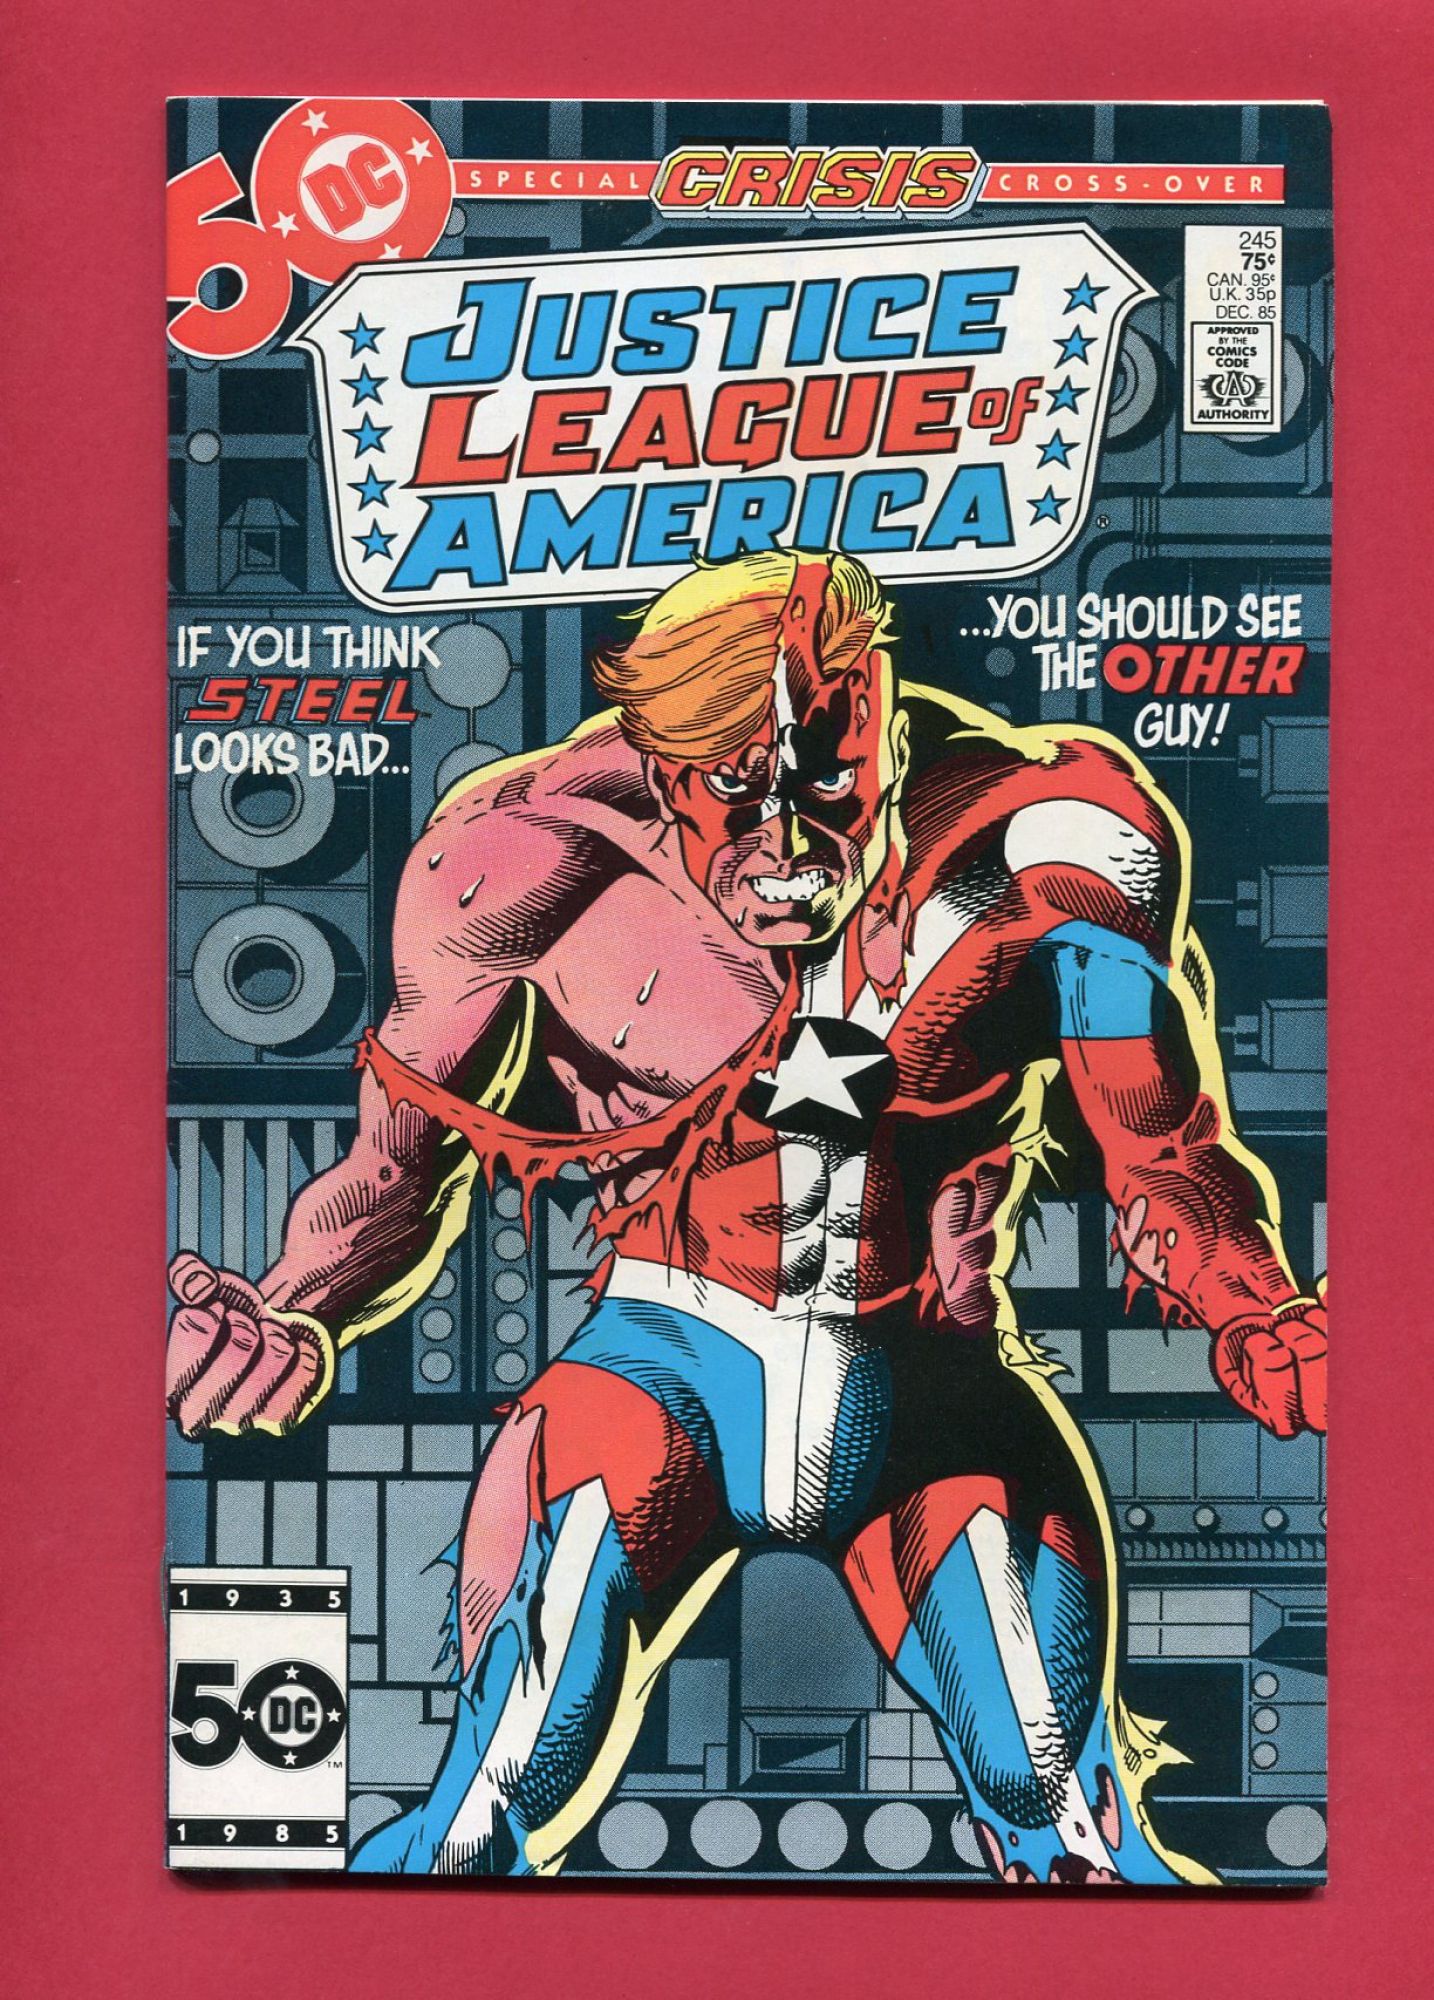 Justice League of America (Volume 1 1960) #245, Dec 1985, 9.2 NM-